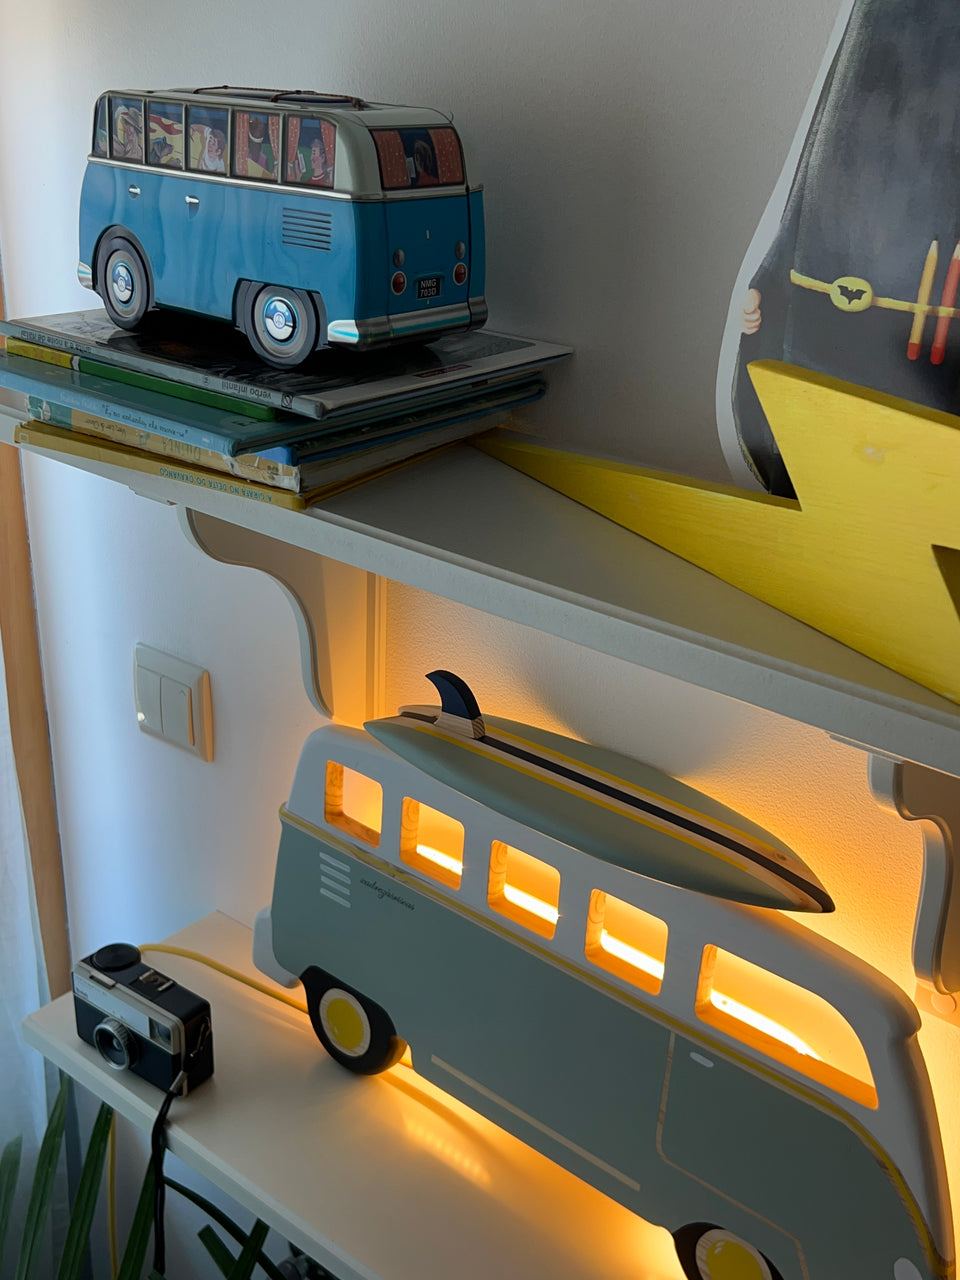 Candeeiro "Van Surf"  de parede Trend - Trend Van Surf wall lamp light